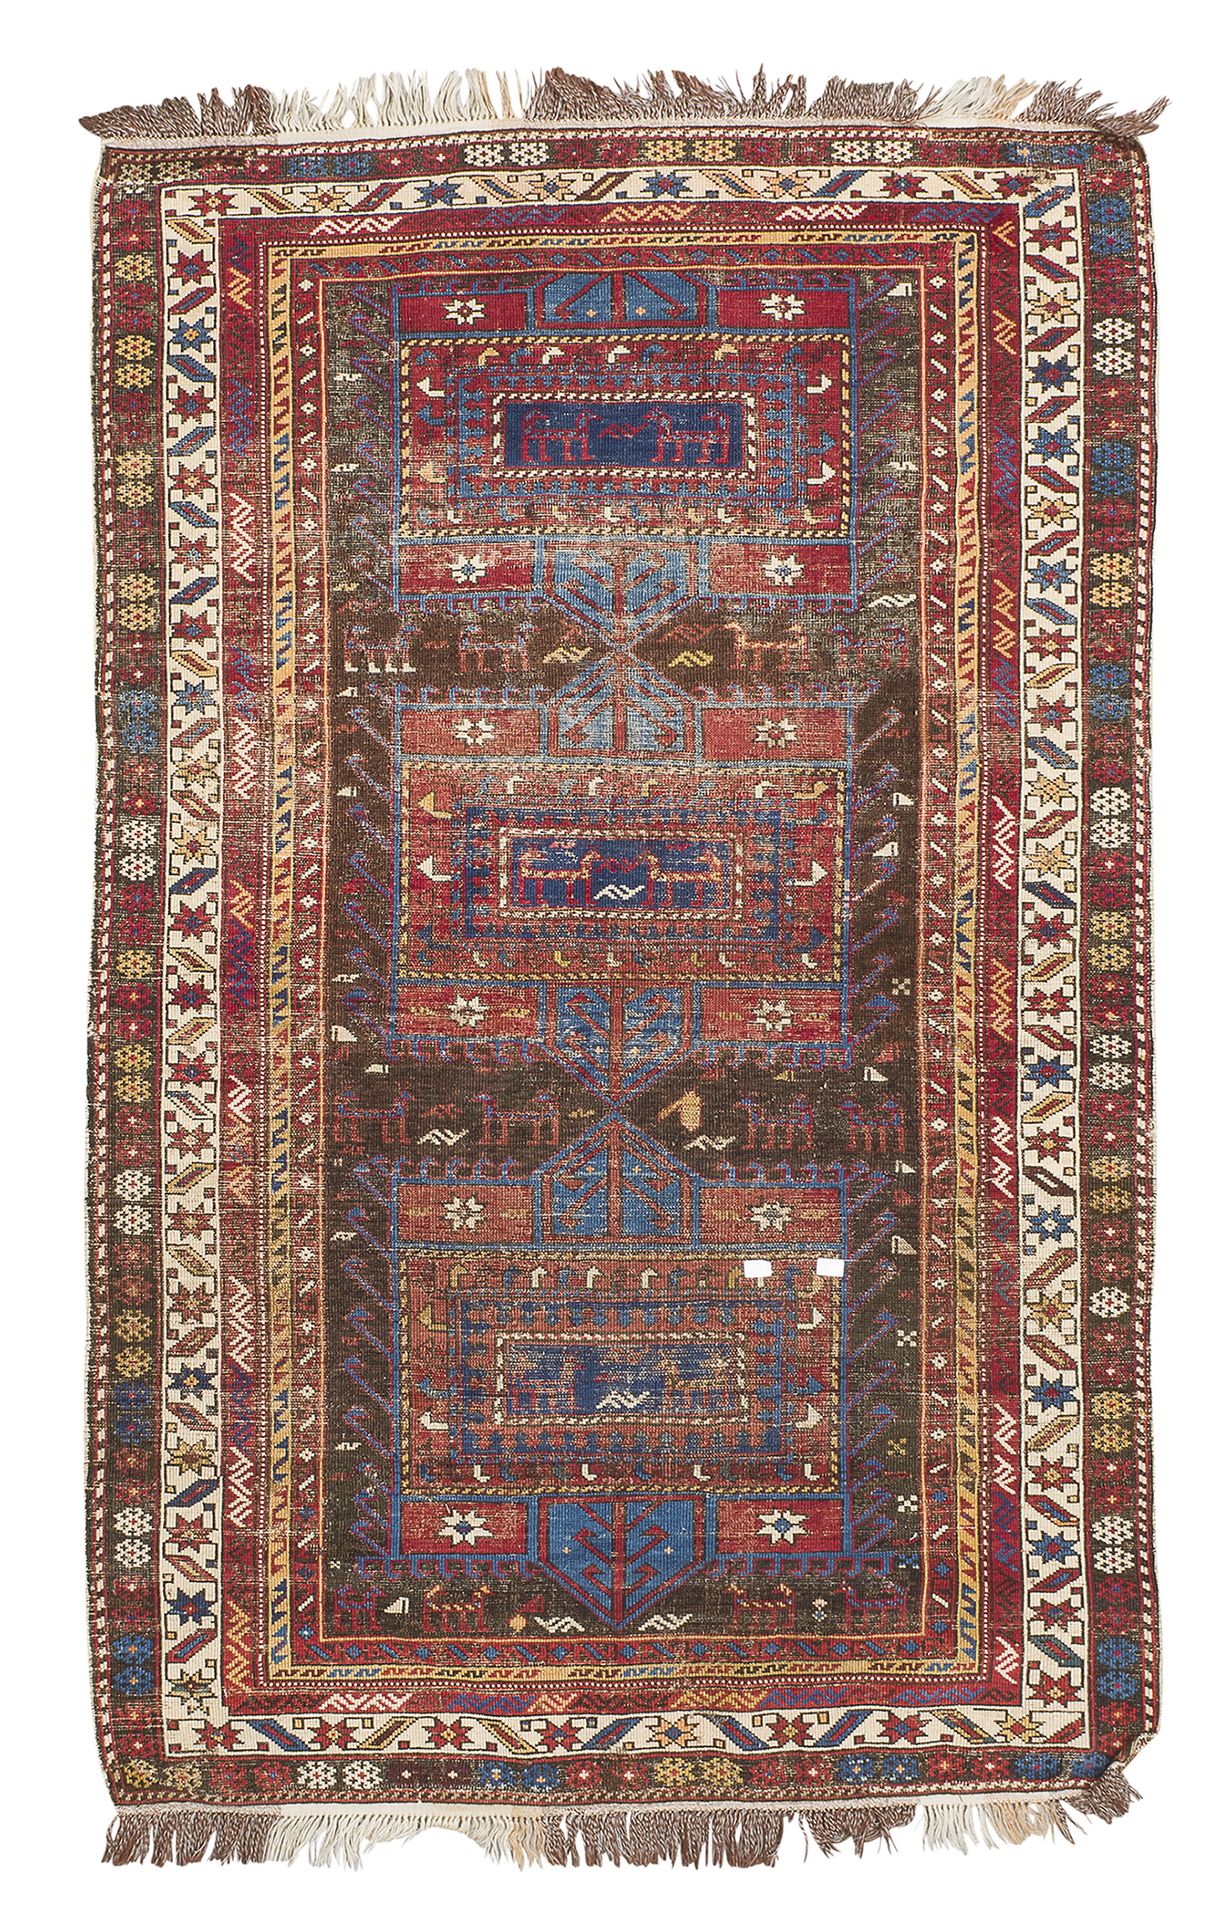 Null 卡扎克地毯，19世纪末


长方形奖章上有动物和爪子的造型，以及动物和符号的次要图案，中央有蓝色背景。


尺寸为180 x 110厘米。


擦伤。